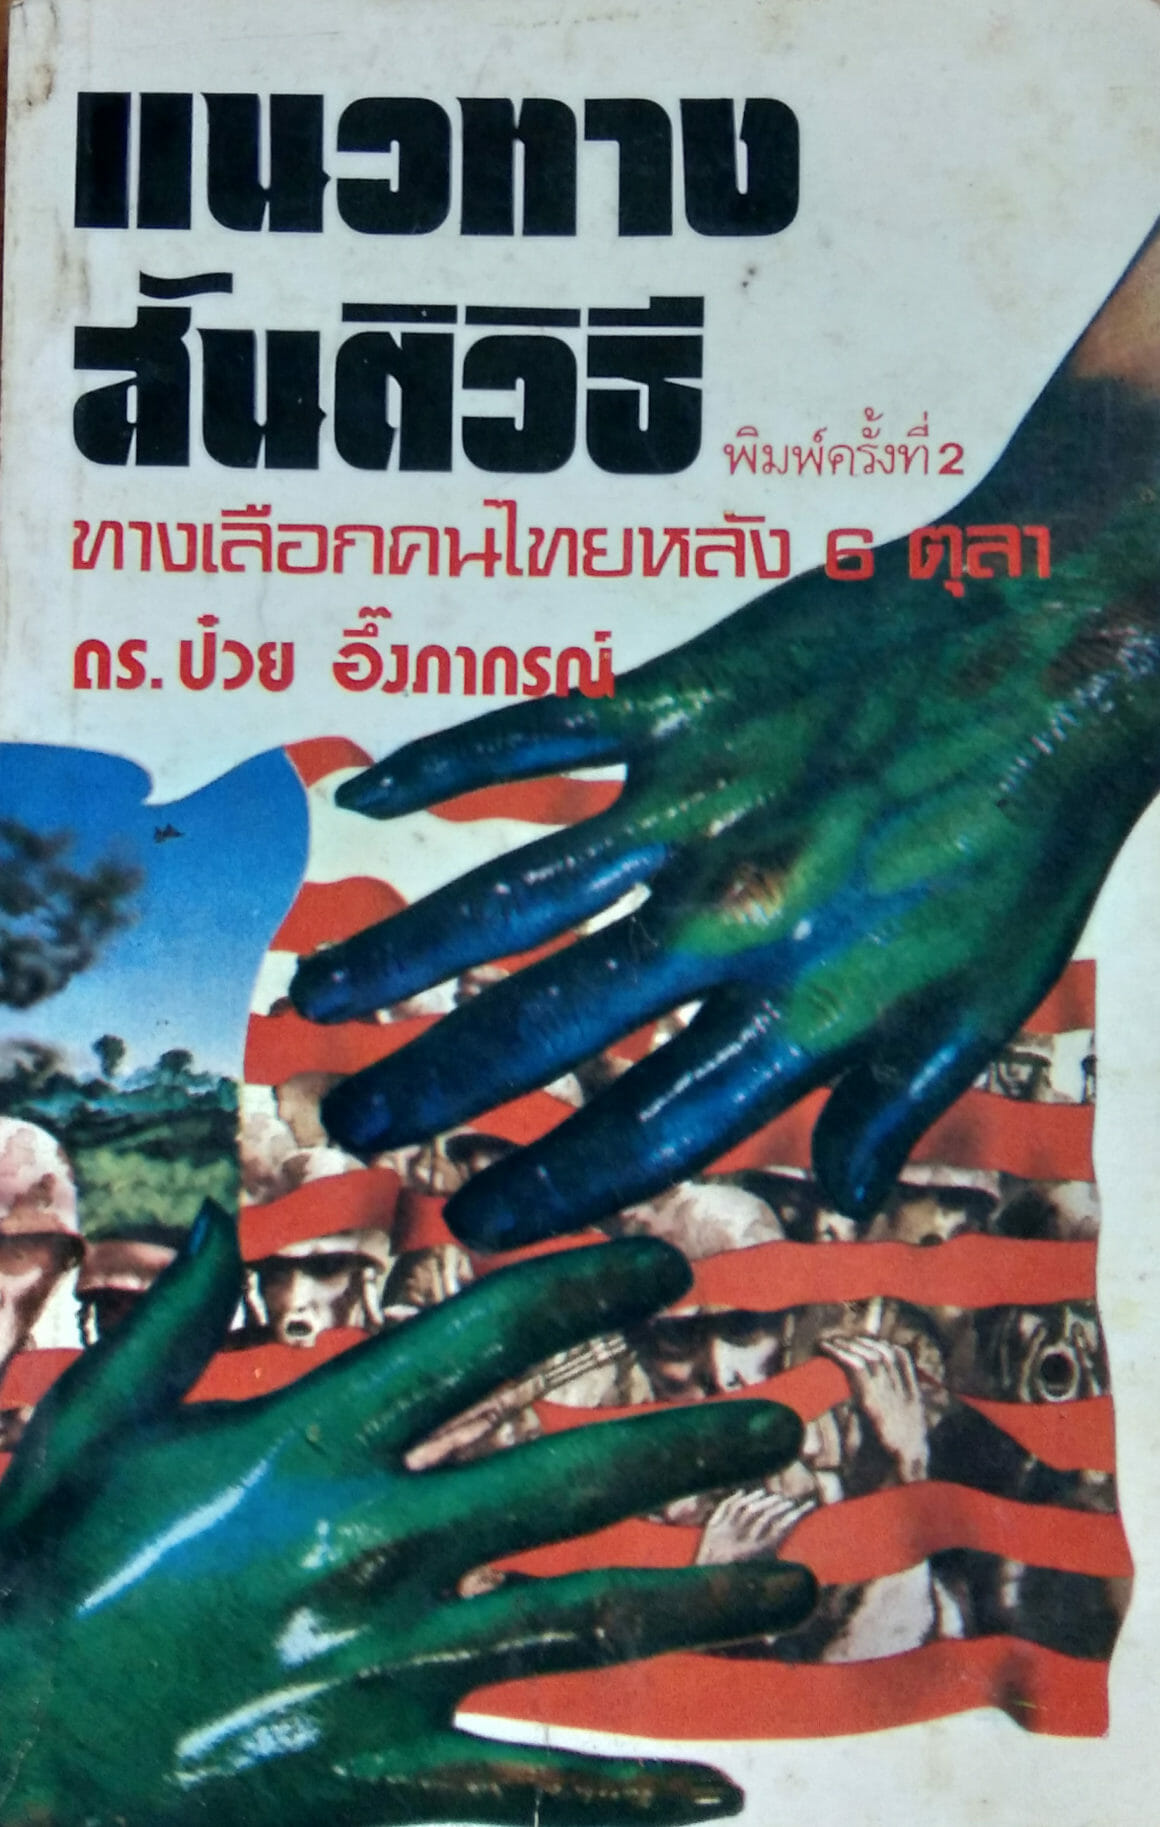 แนวทางสันติวิธี ทางเลือกของคนไทยหลัง 6 ตุลาคม